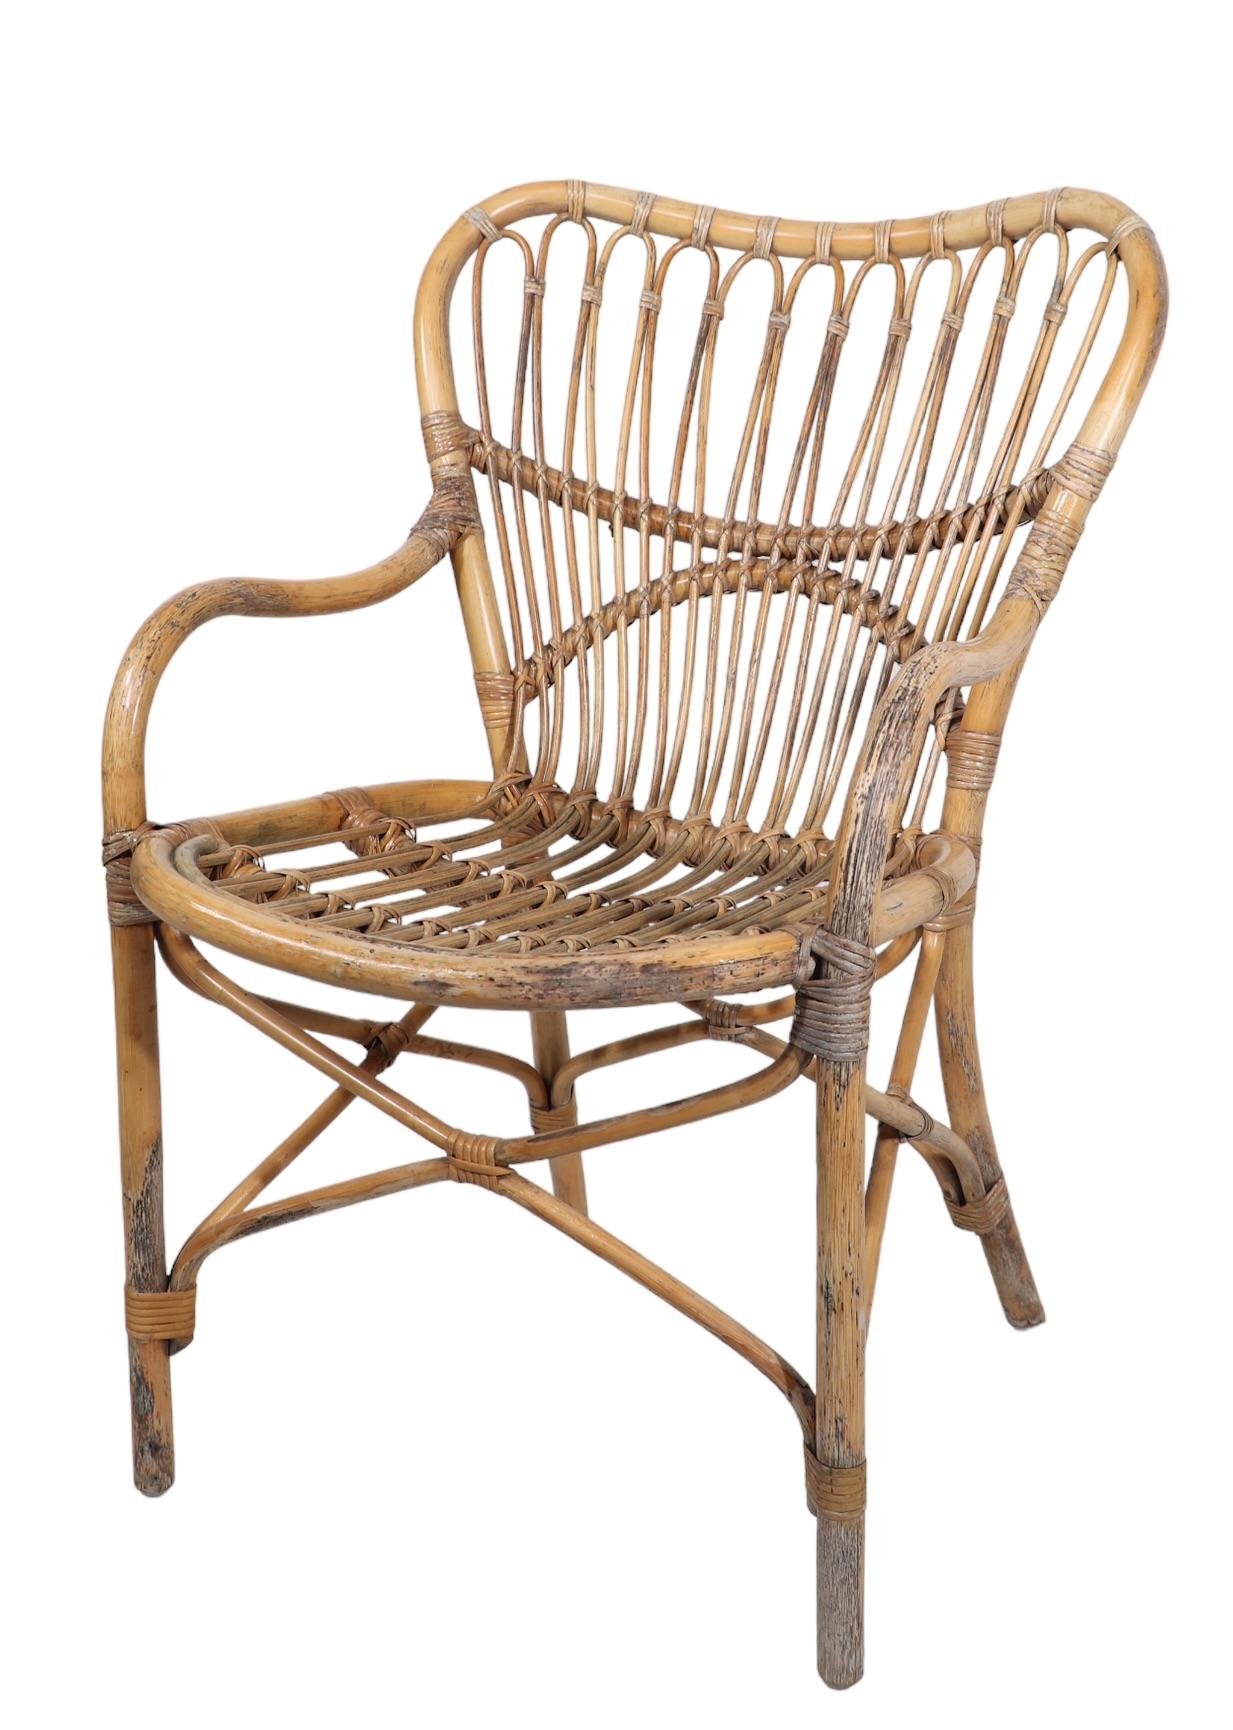 Schicker, stilvoller, raffinierter Beistellstuhl aus Bambus und Rattan, hergestellt in Italien, ca. 1950/1960er Jahre, im Stil von Franco Albini und Vittorio Bonaccina. Dieses Exemplar ist in gutem Originalzustand, strukturell solide und robust, das